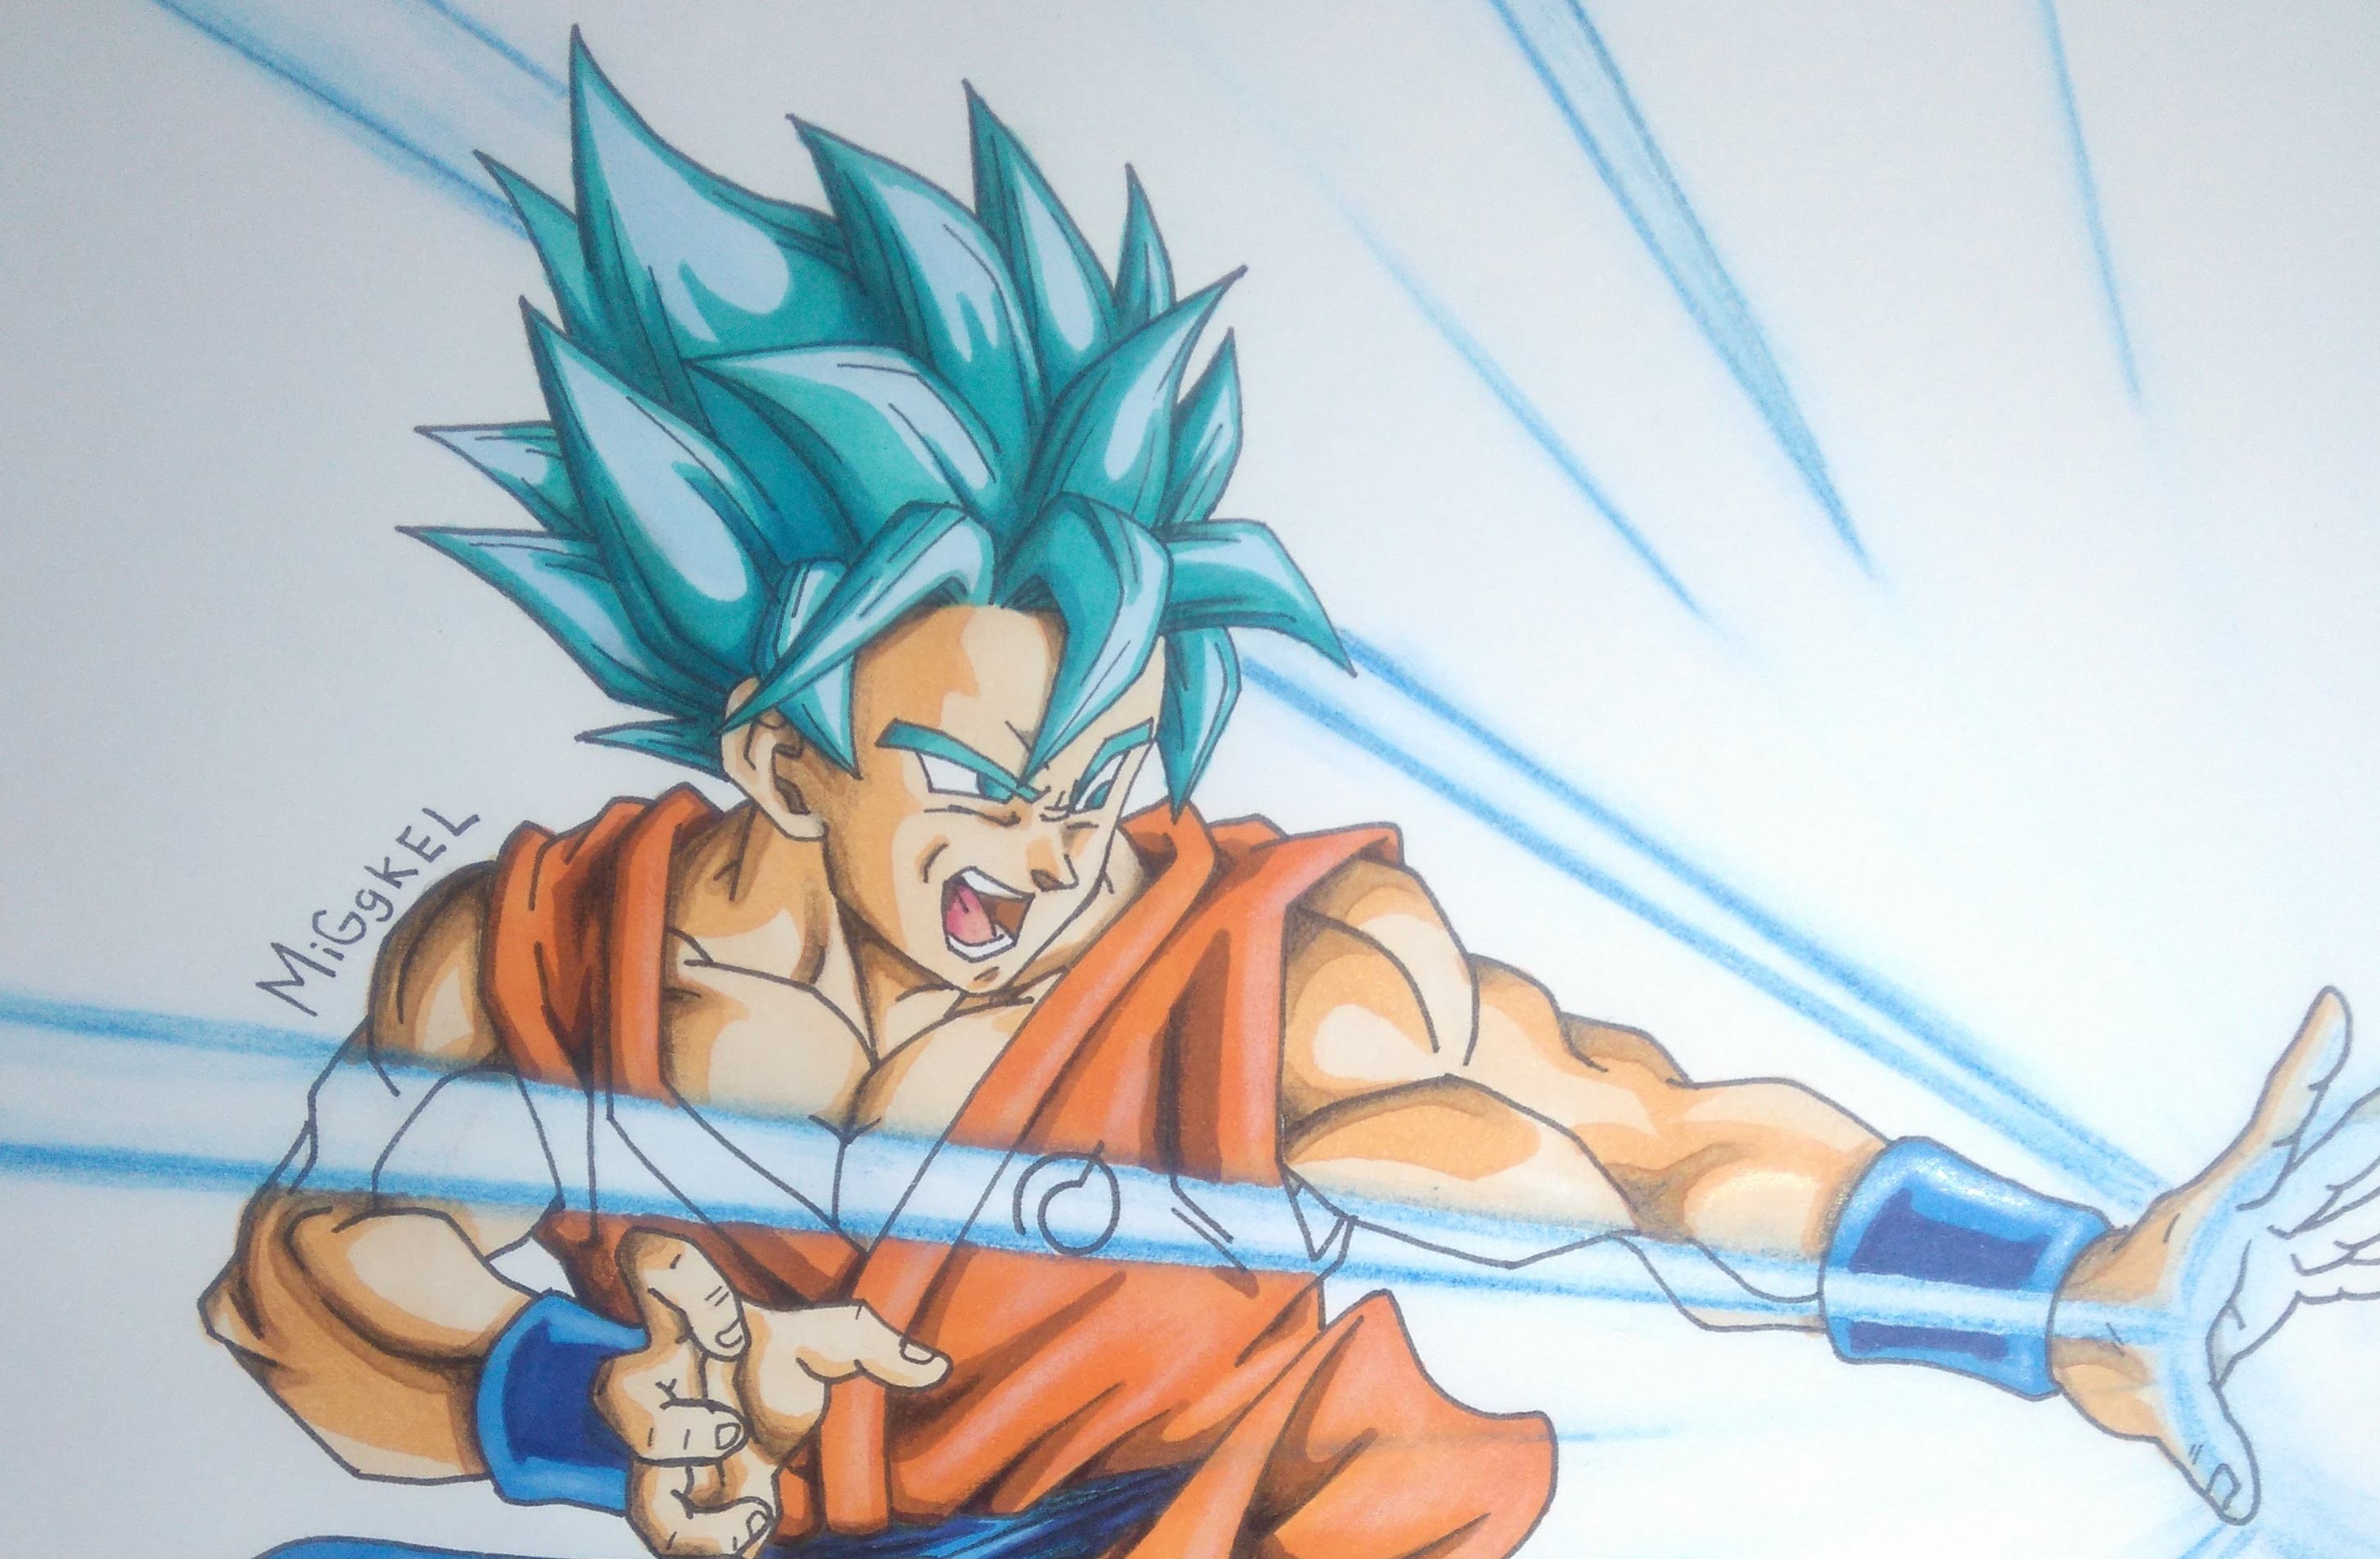 Dibujando a Goku SsgodSs (pelo azul). How to draw Goku Super saiyan god super (blue hair)